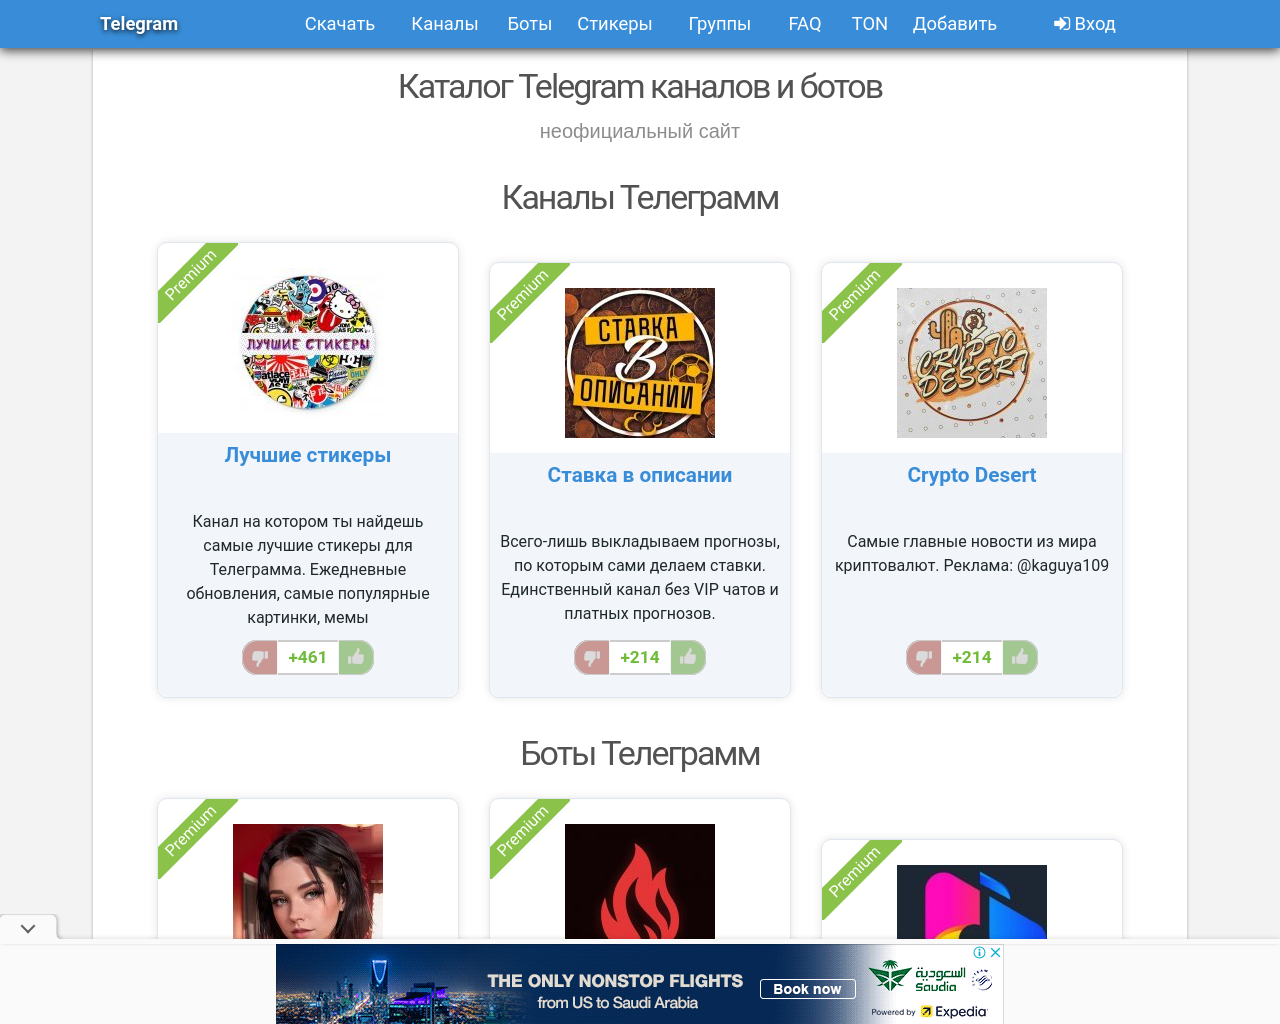 telegram.org.ru